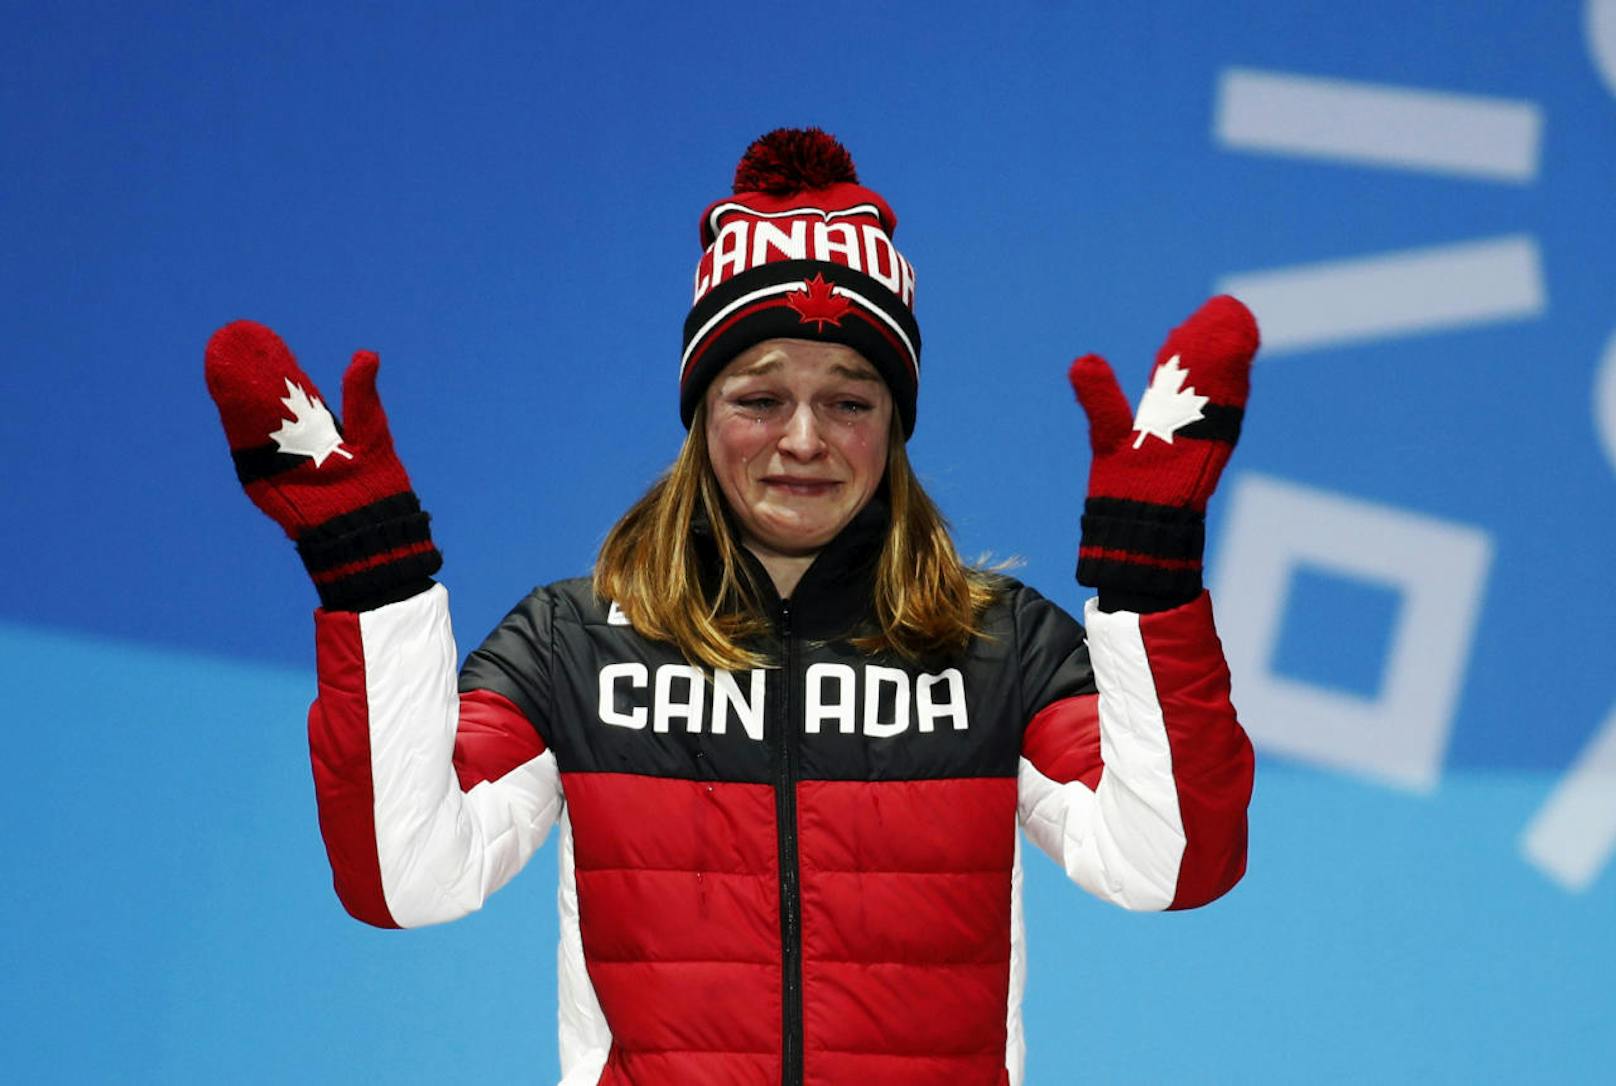 Die Kanadierin Kim Boutin erlebte ihr eigenes Olympia-Drama! Nachdem die Südkoreanerin Choi Min-jeong im Shorttrack über 500 Meter disqualifiziert worden war, erbte Boutin die Bronzemedaille. Es folgten unsportliche Aktionen des südkoreanischen Publikums. Von Pfiffen bis hin zu Morddrohungen.